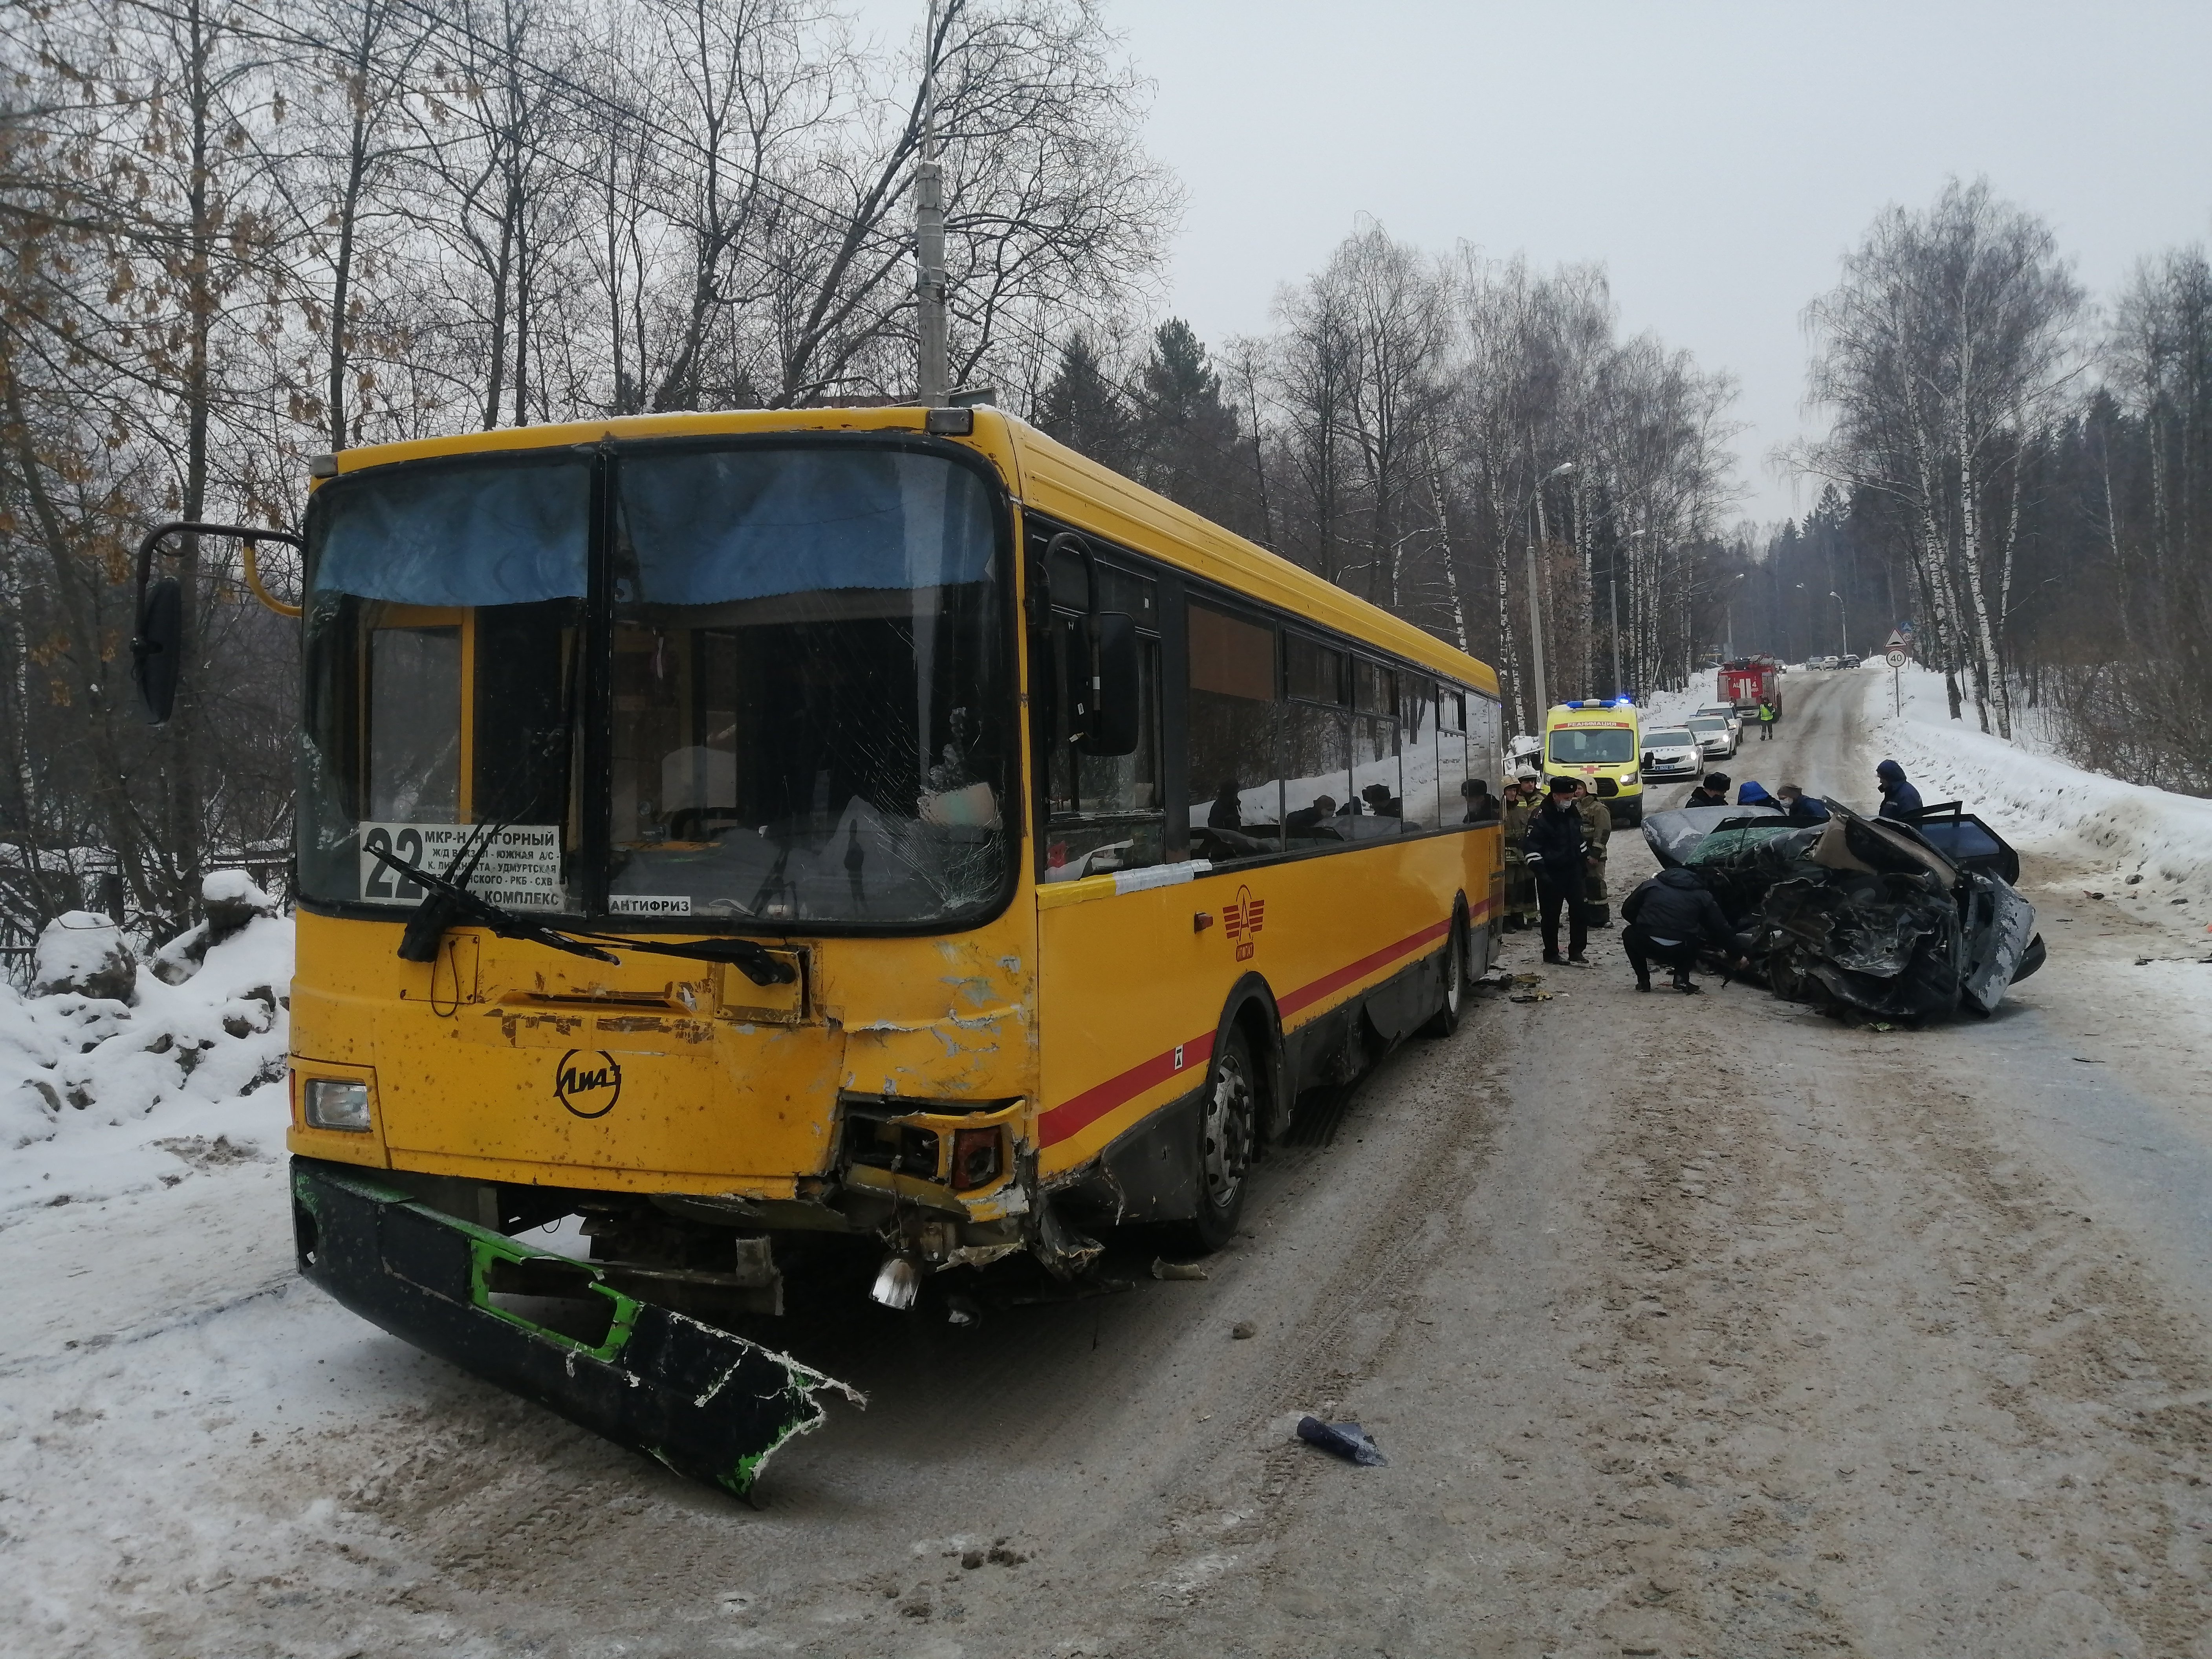 

Водитель легковушки погибла при столкновении с автобусом в Ижевске

